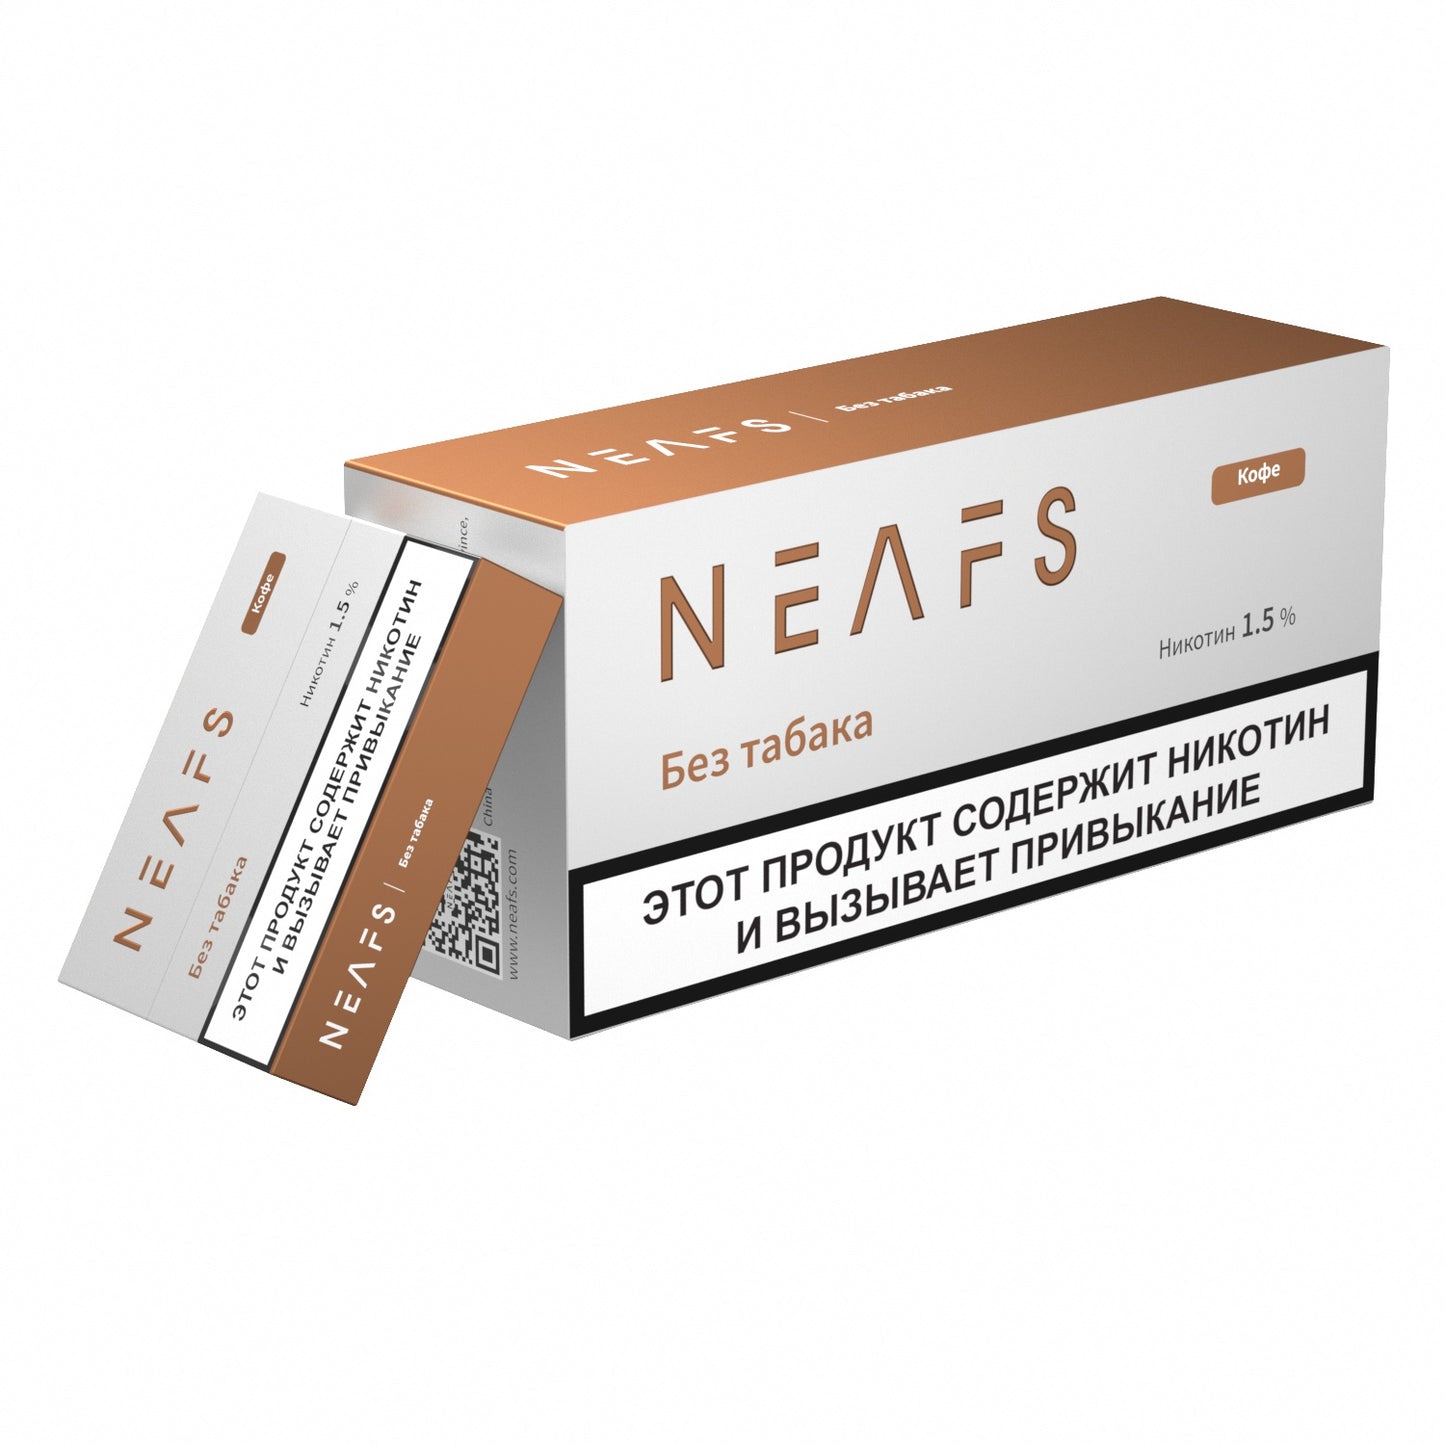 Никотиновые стики NEAFS Кофе 1.5% – 200 стиков